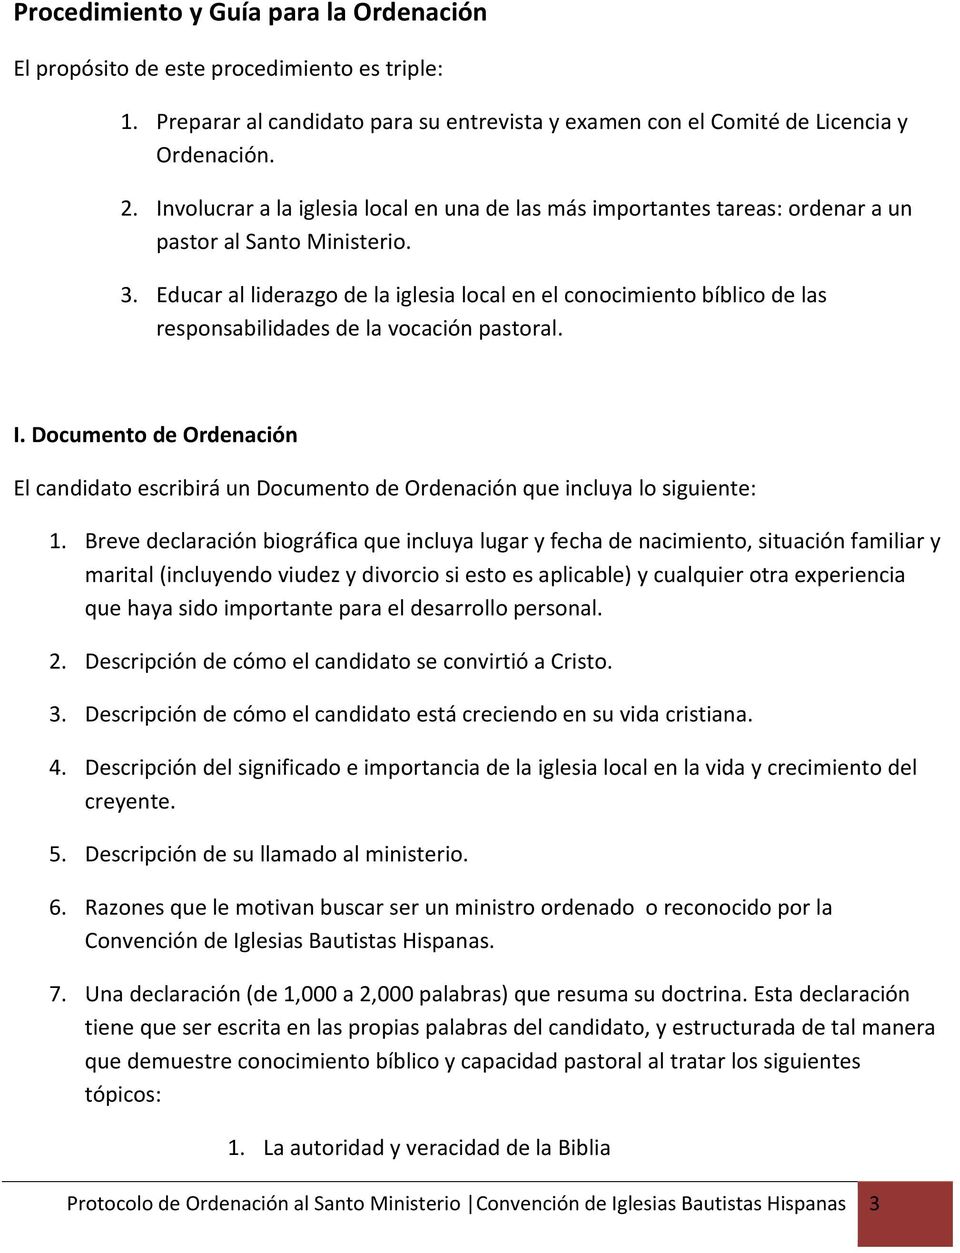 Protocolo de Ordenación al Santo Ministerio Convención de Iglesias  Bautistas Hispanas 1 - PDF Descargar libre